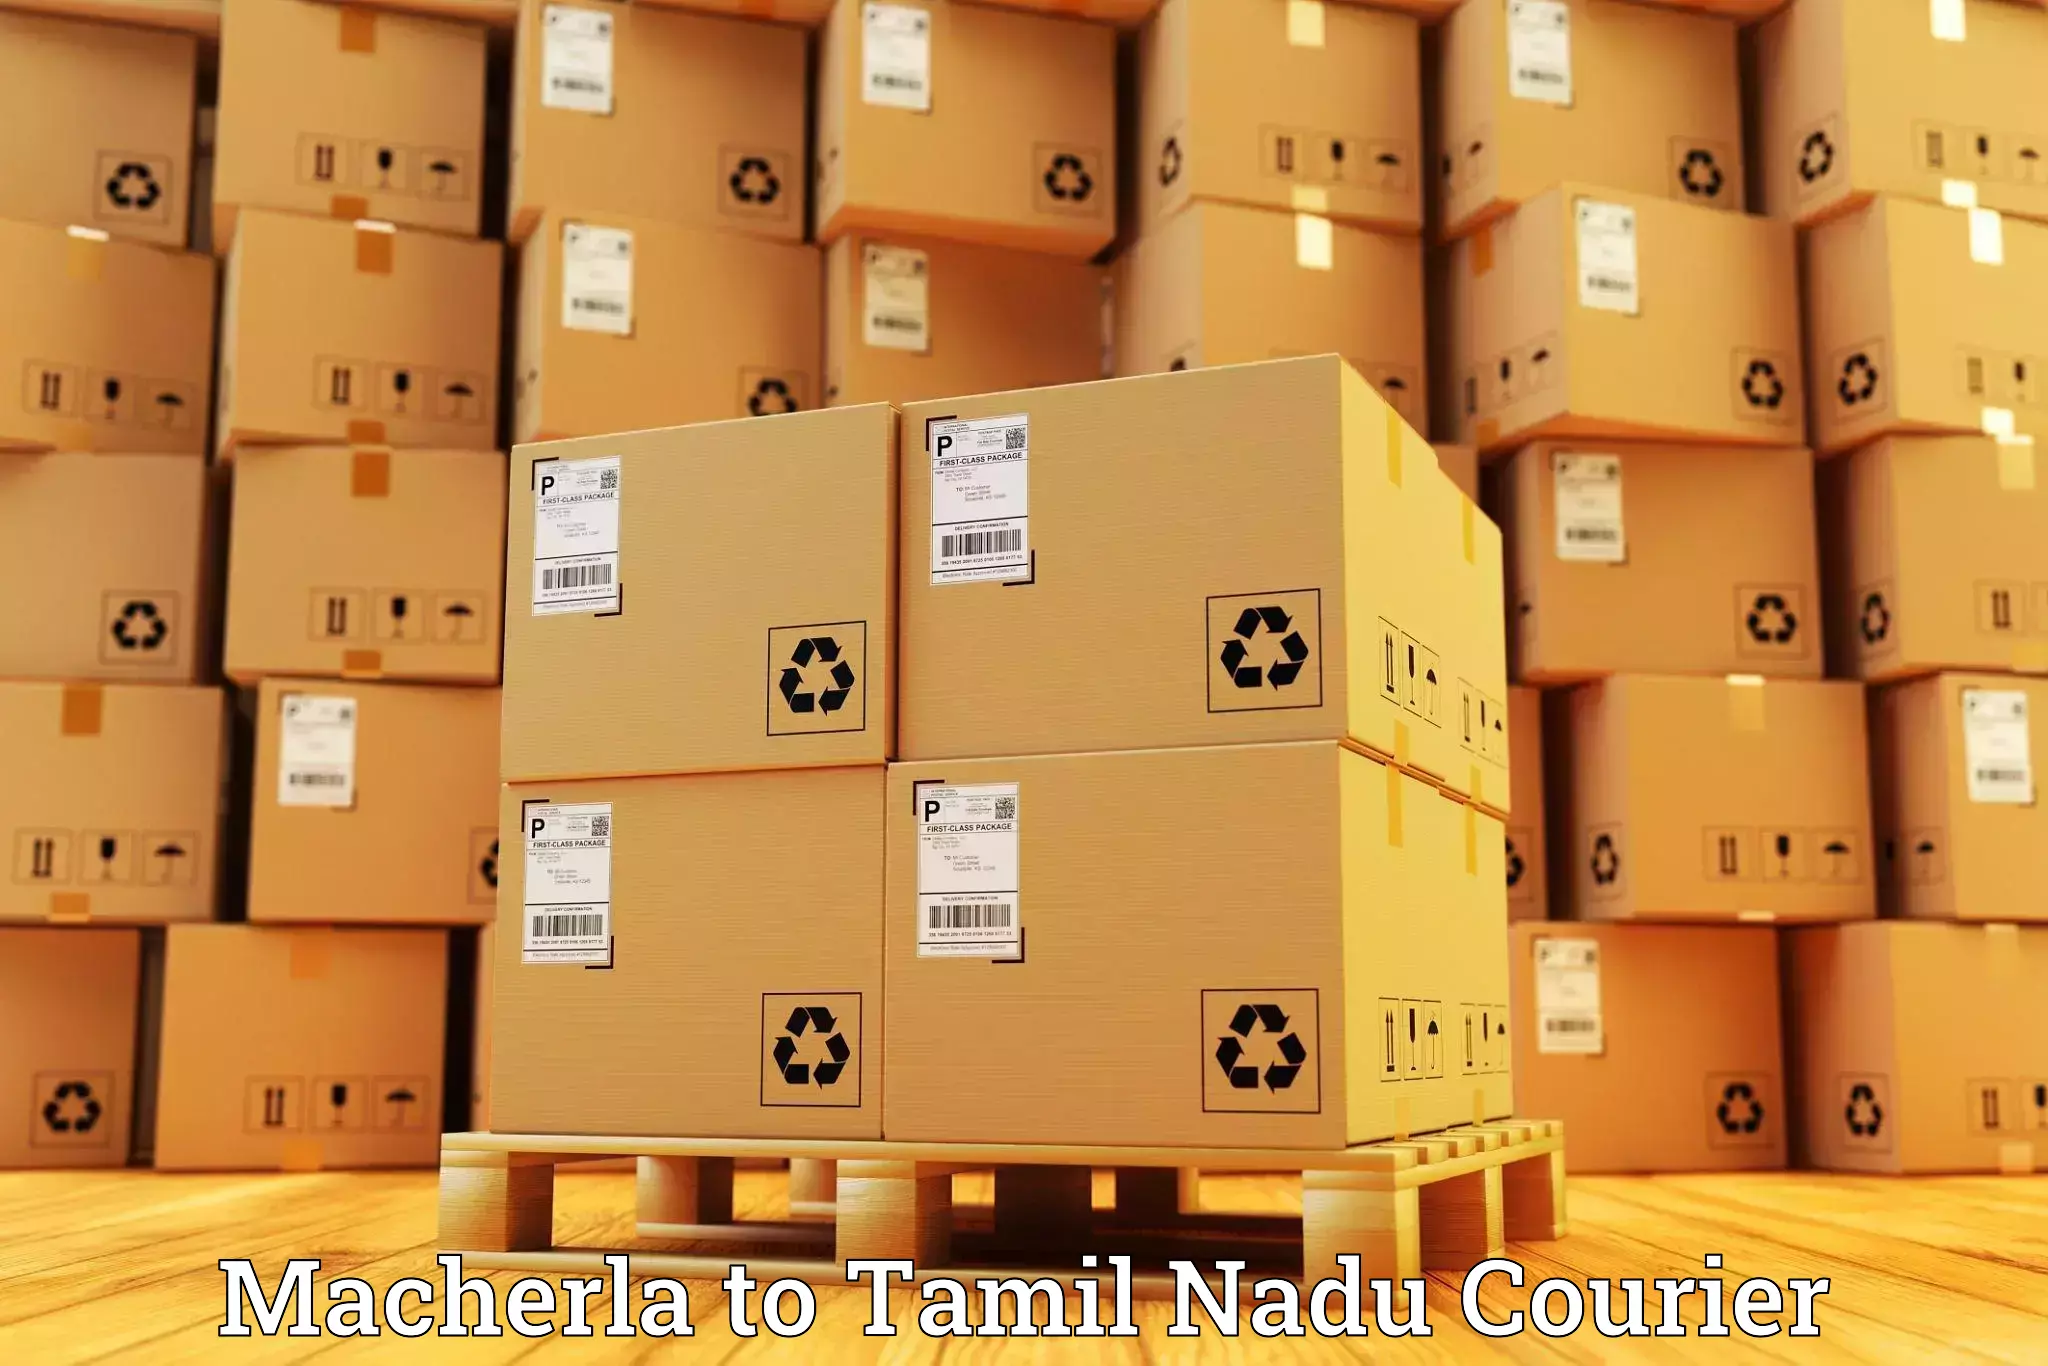 Professional courier handling Macherla to Tamil Nadu